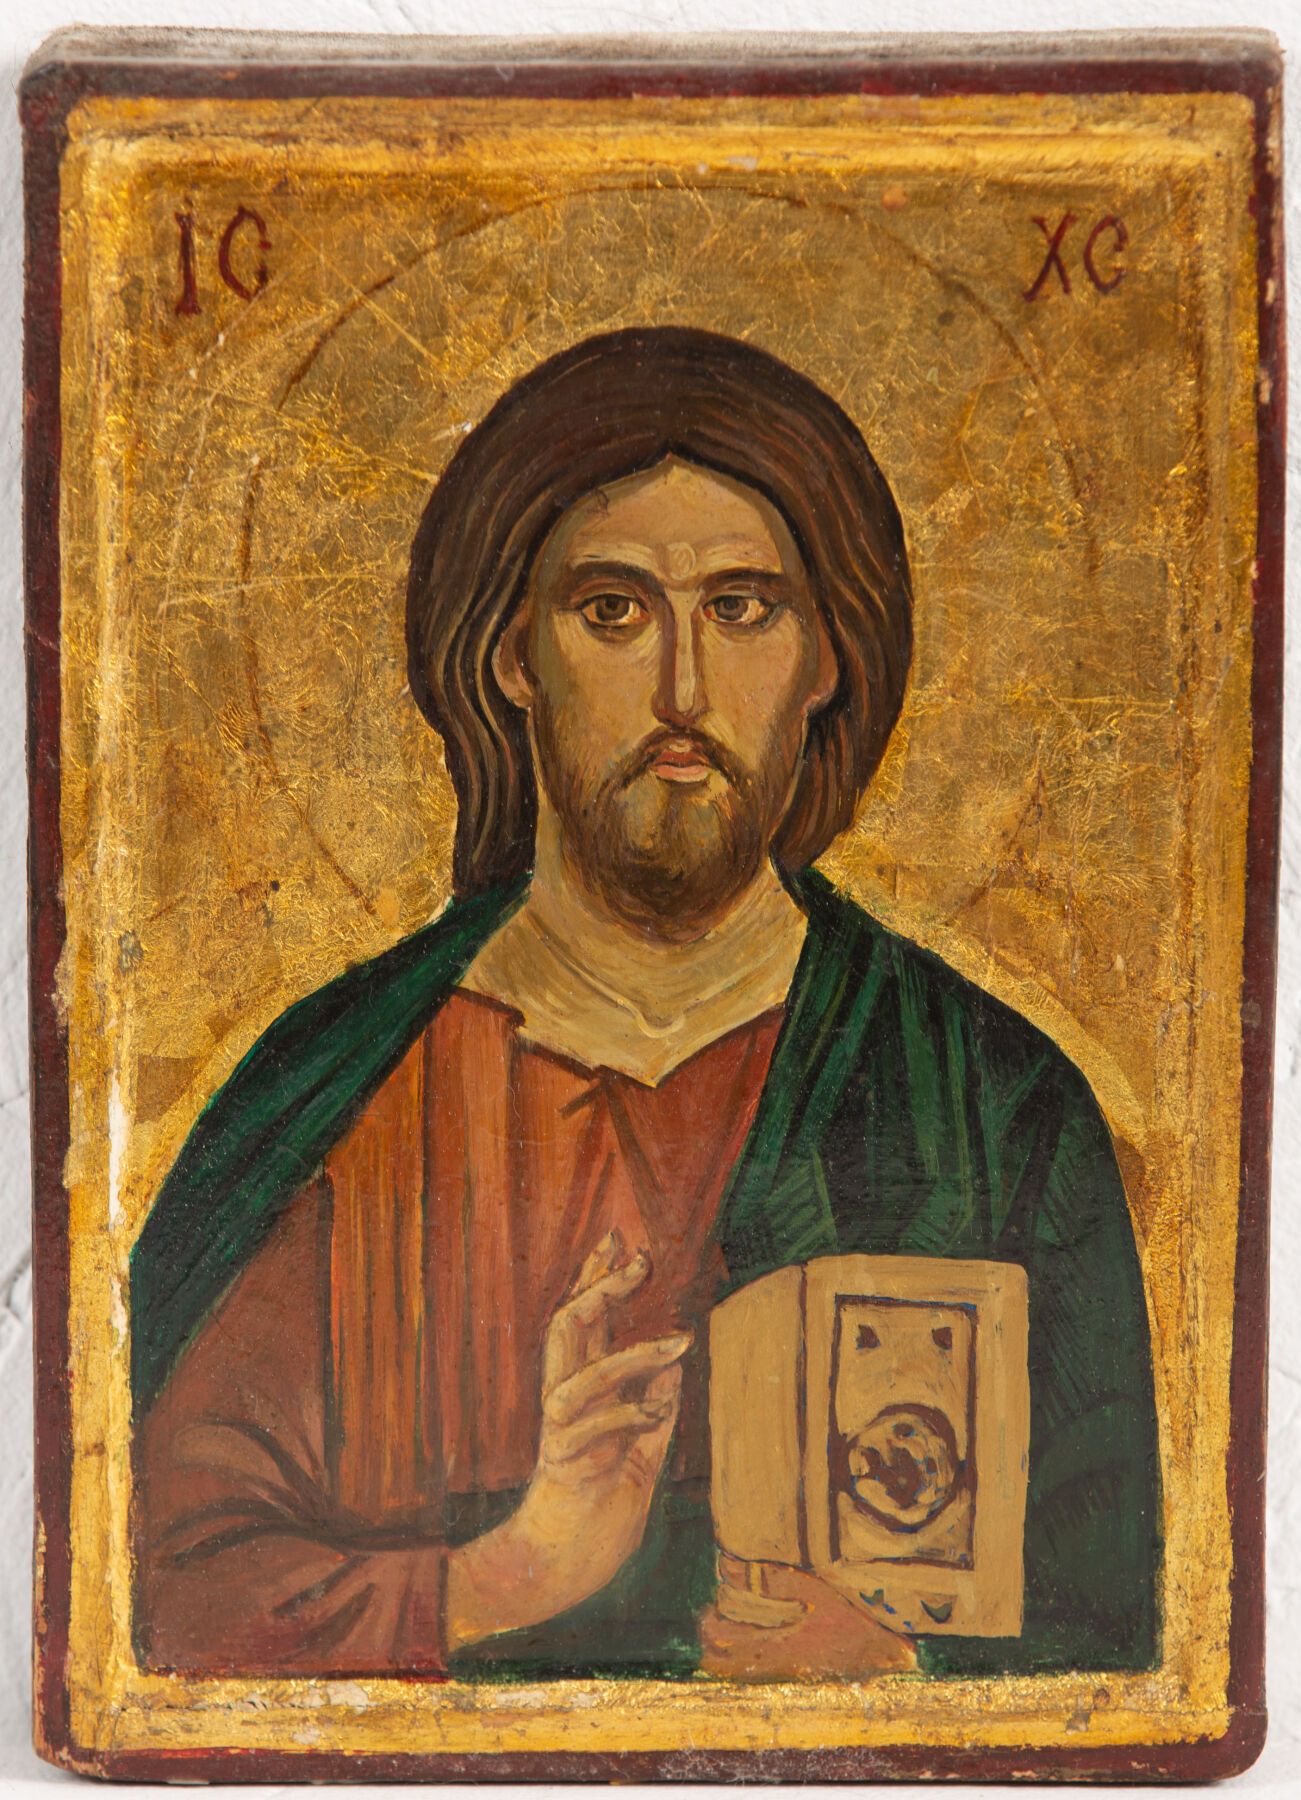 Null Scuola russa del XX secolo.
Cristo Pantokrator.
Icona.
H_20 cm L_14 cm